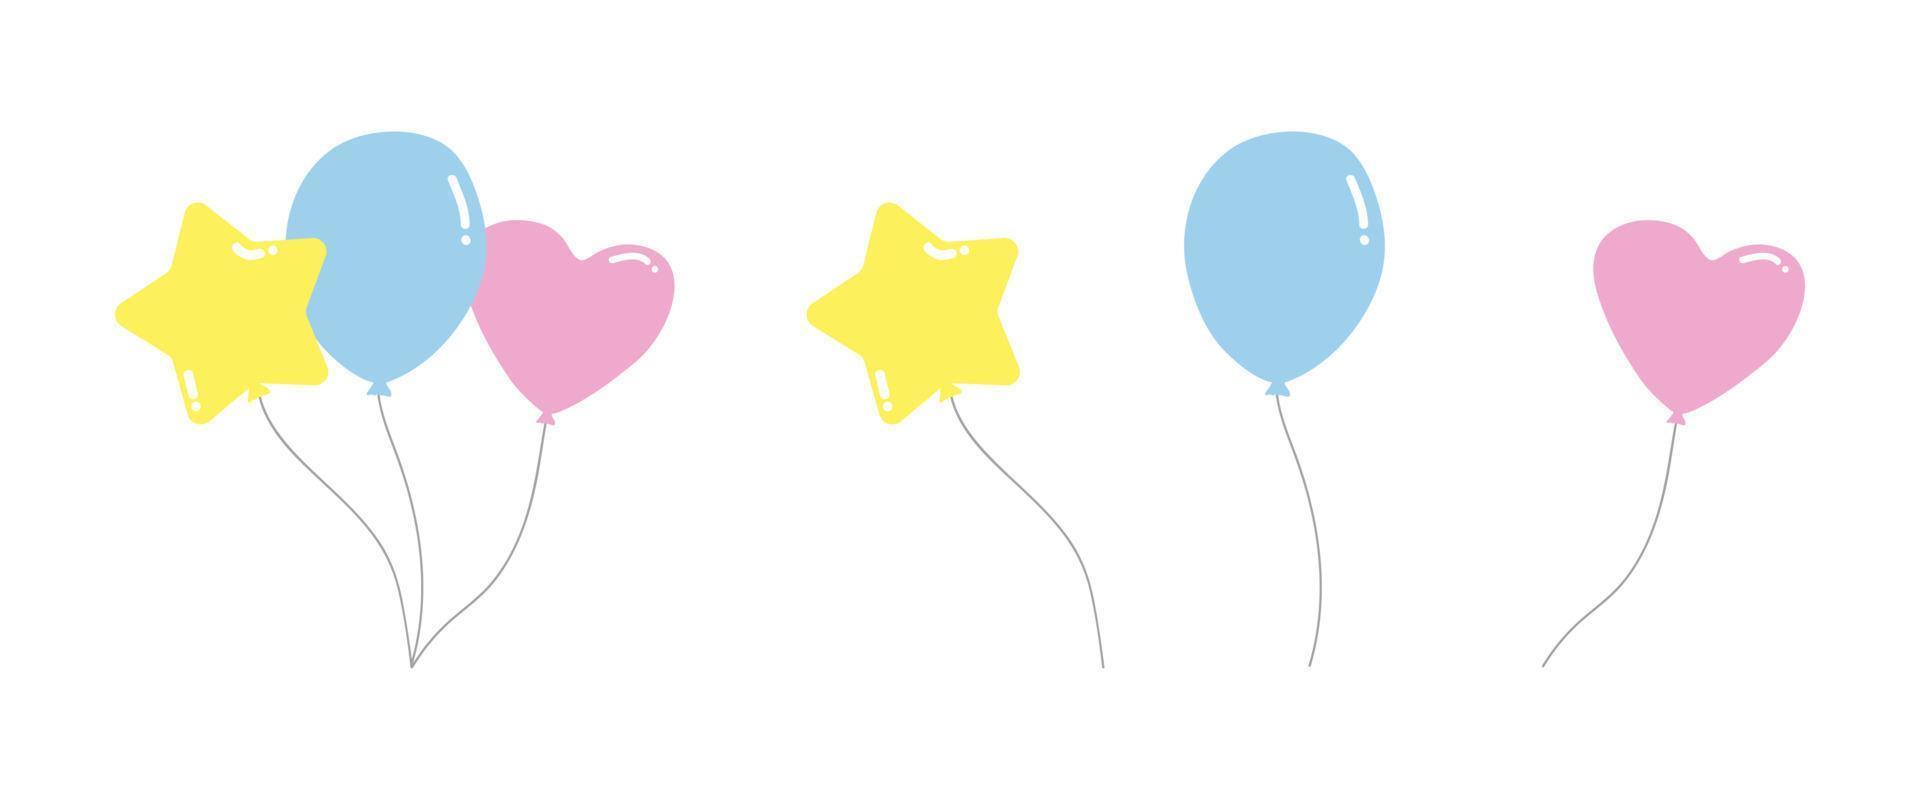 Vektor-Set von Baby-Ballon-Cliparts. einfache süße luftballons mit verschiedenen farben und formen flache vektorillustration. sternförmiger, runder, herzförmiger Ballon-Cartoon-Stil. dekorative Ballons Vektor